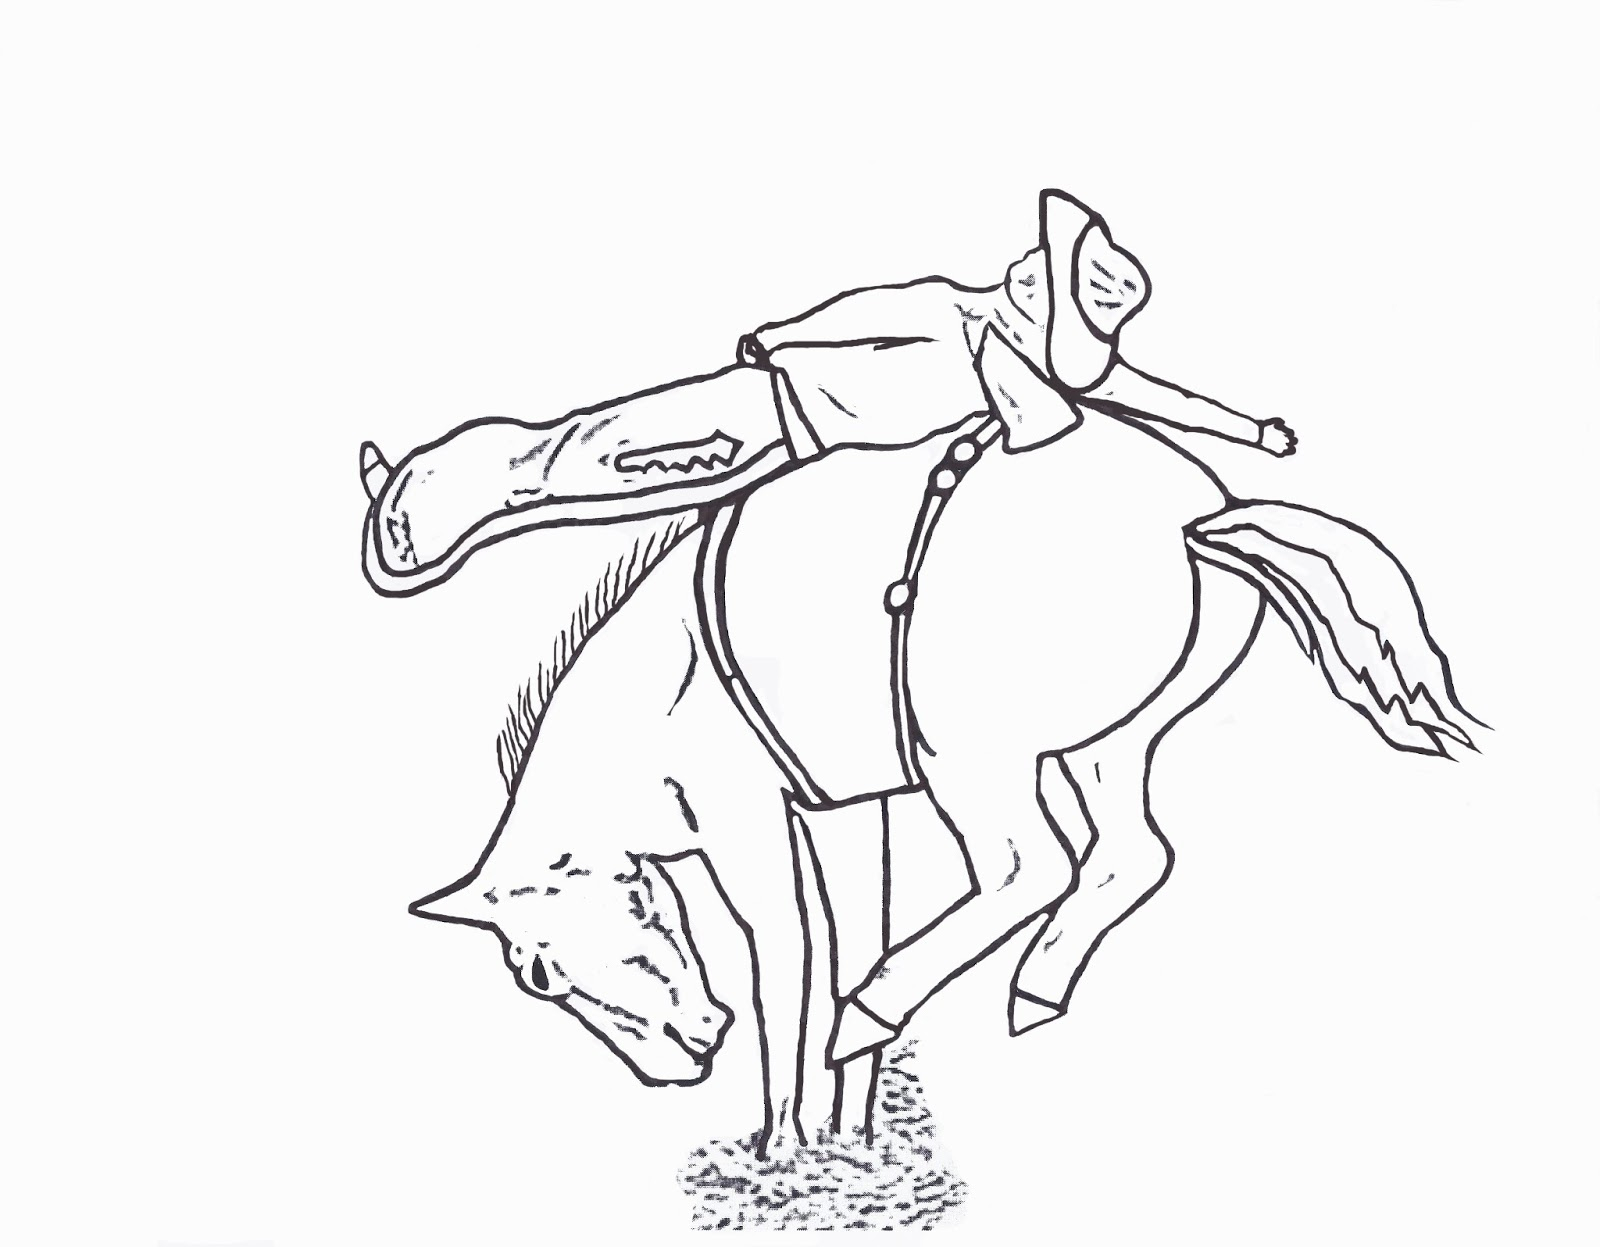 Bull Riding Coloring Pages Free Bull Rider Coloring Pages Fondos De Pantalla